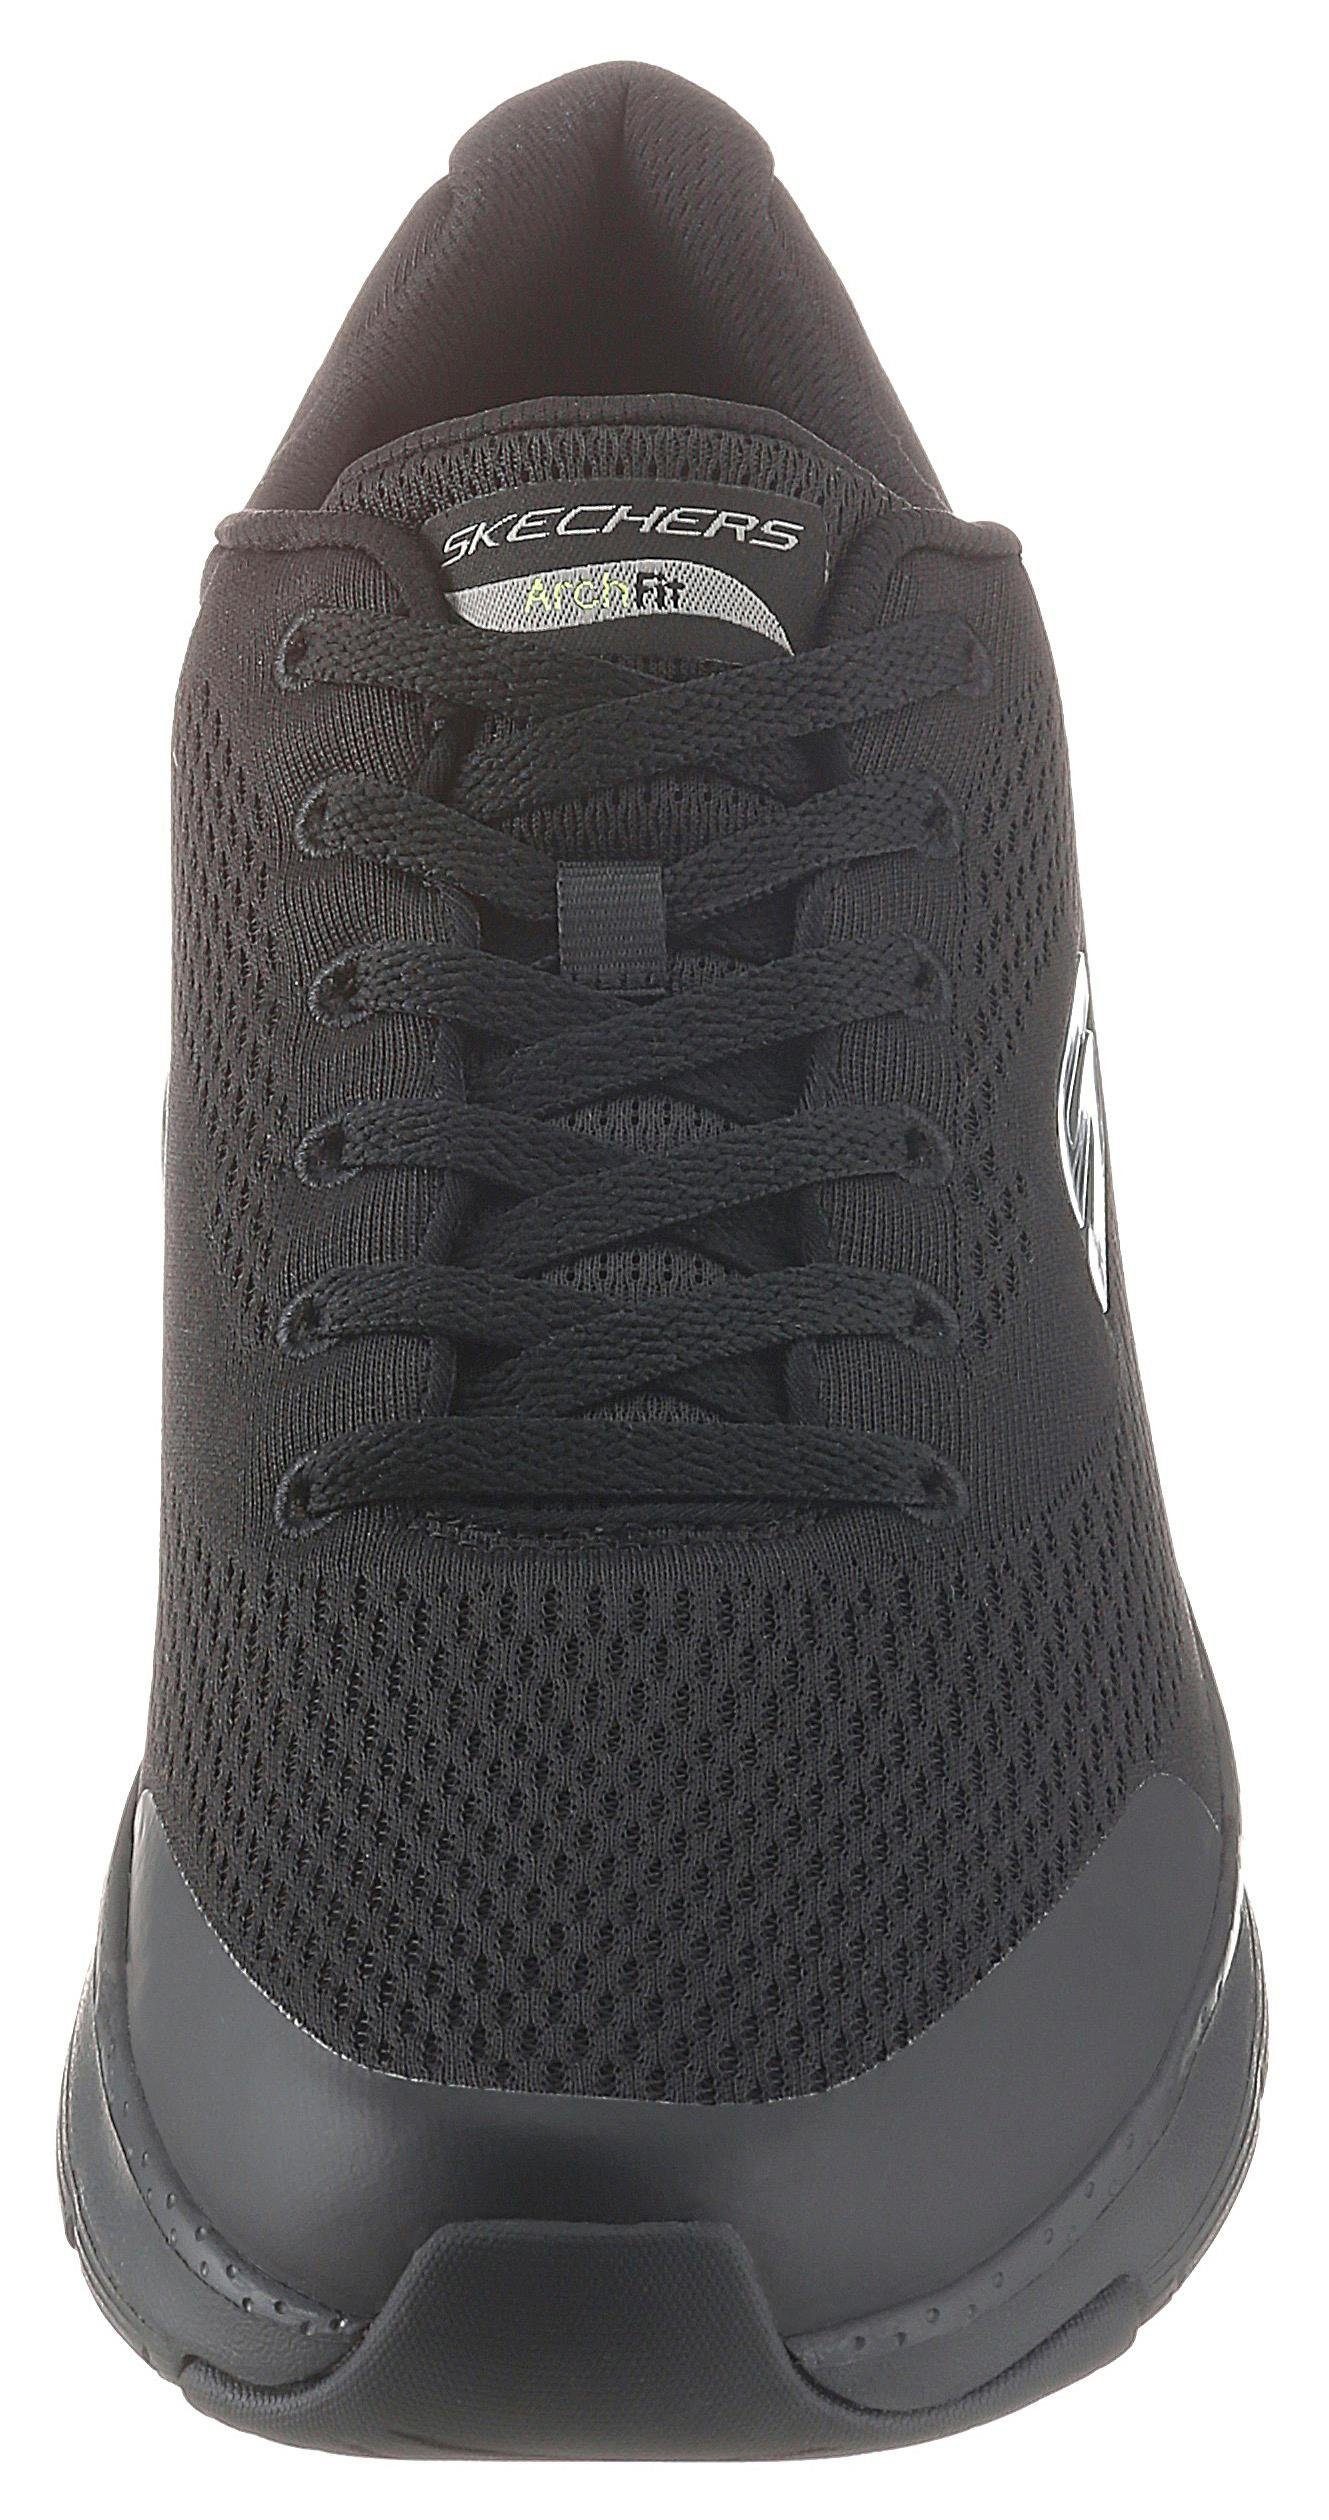 Fit-Funktion schwarz komfortabler Arch Sneaker Fit mit Skechers Arch